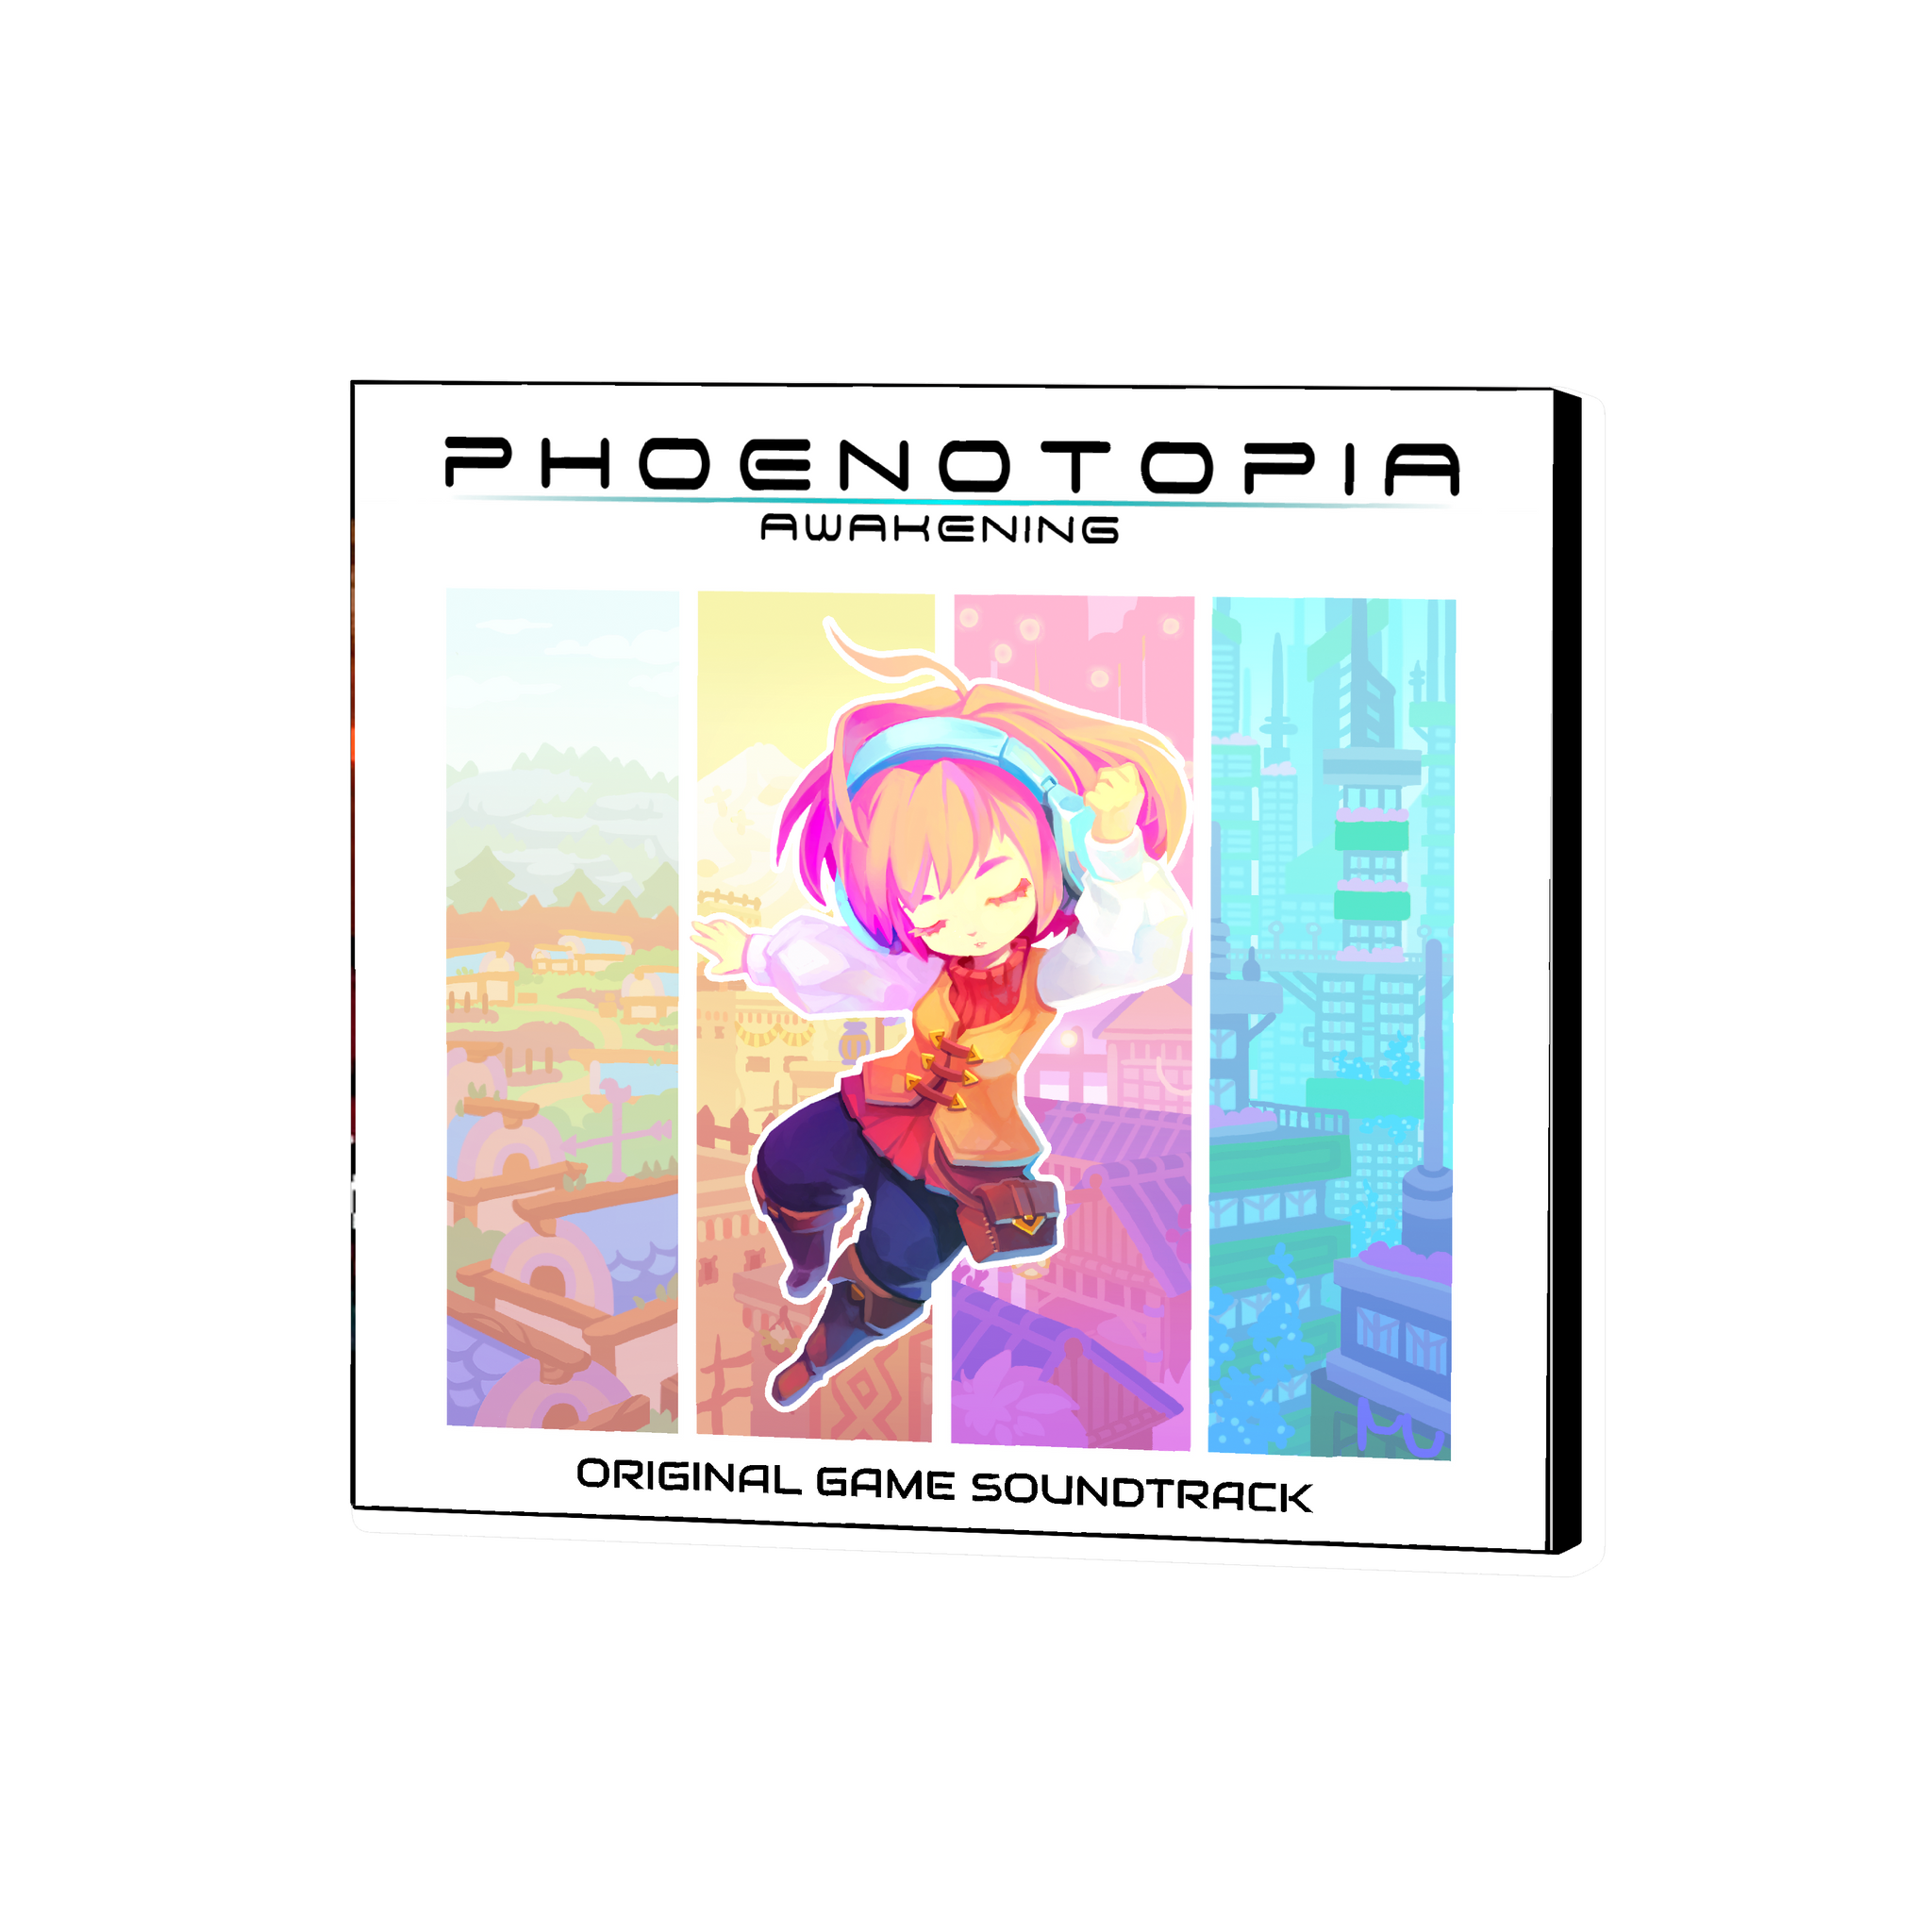 Phoenotopia-Awakening-PS4-Steelbook-Edition-&-Soundtrack-bazaar-bazaar-com-2